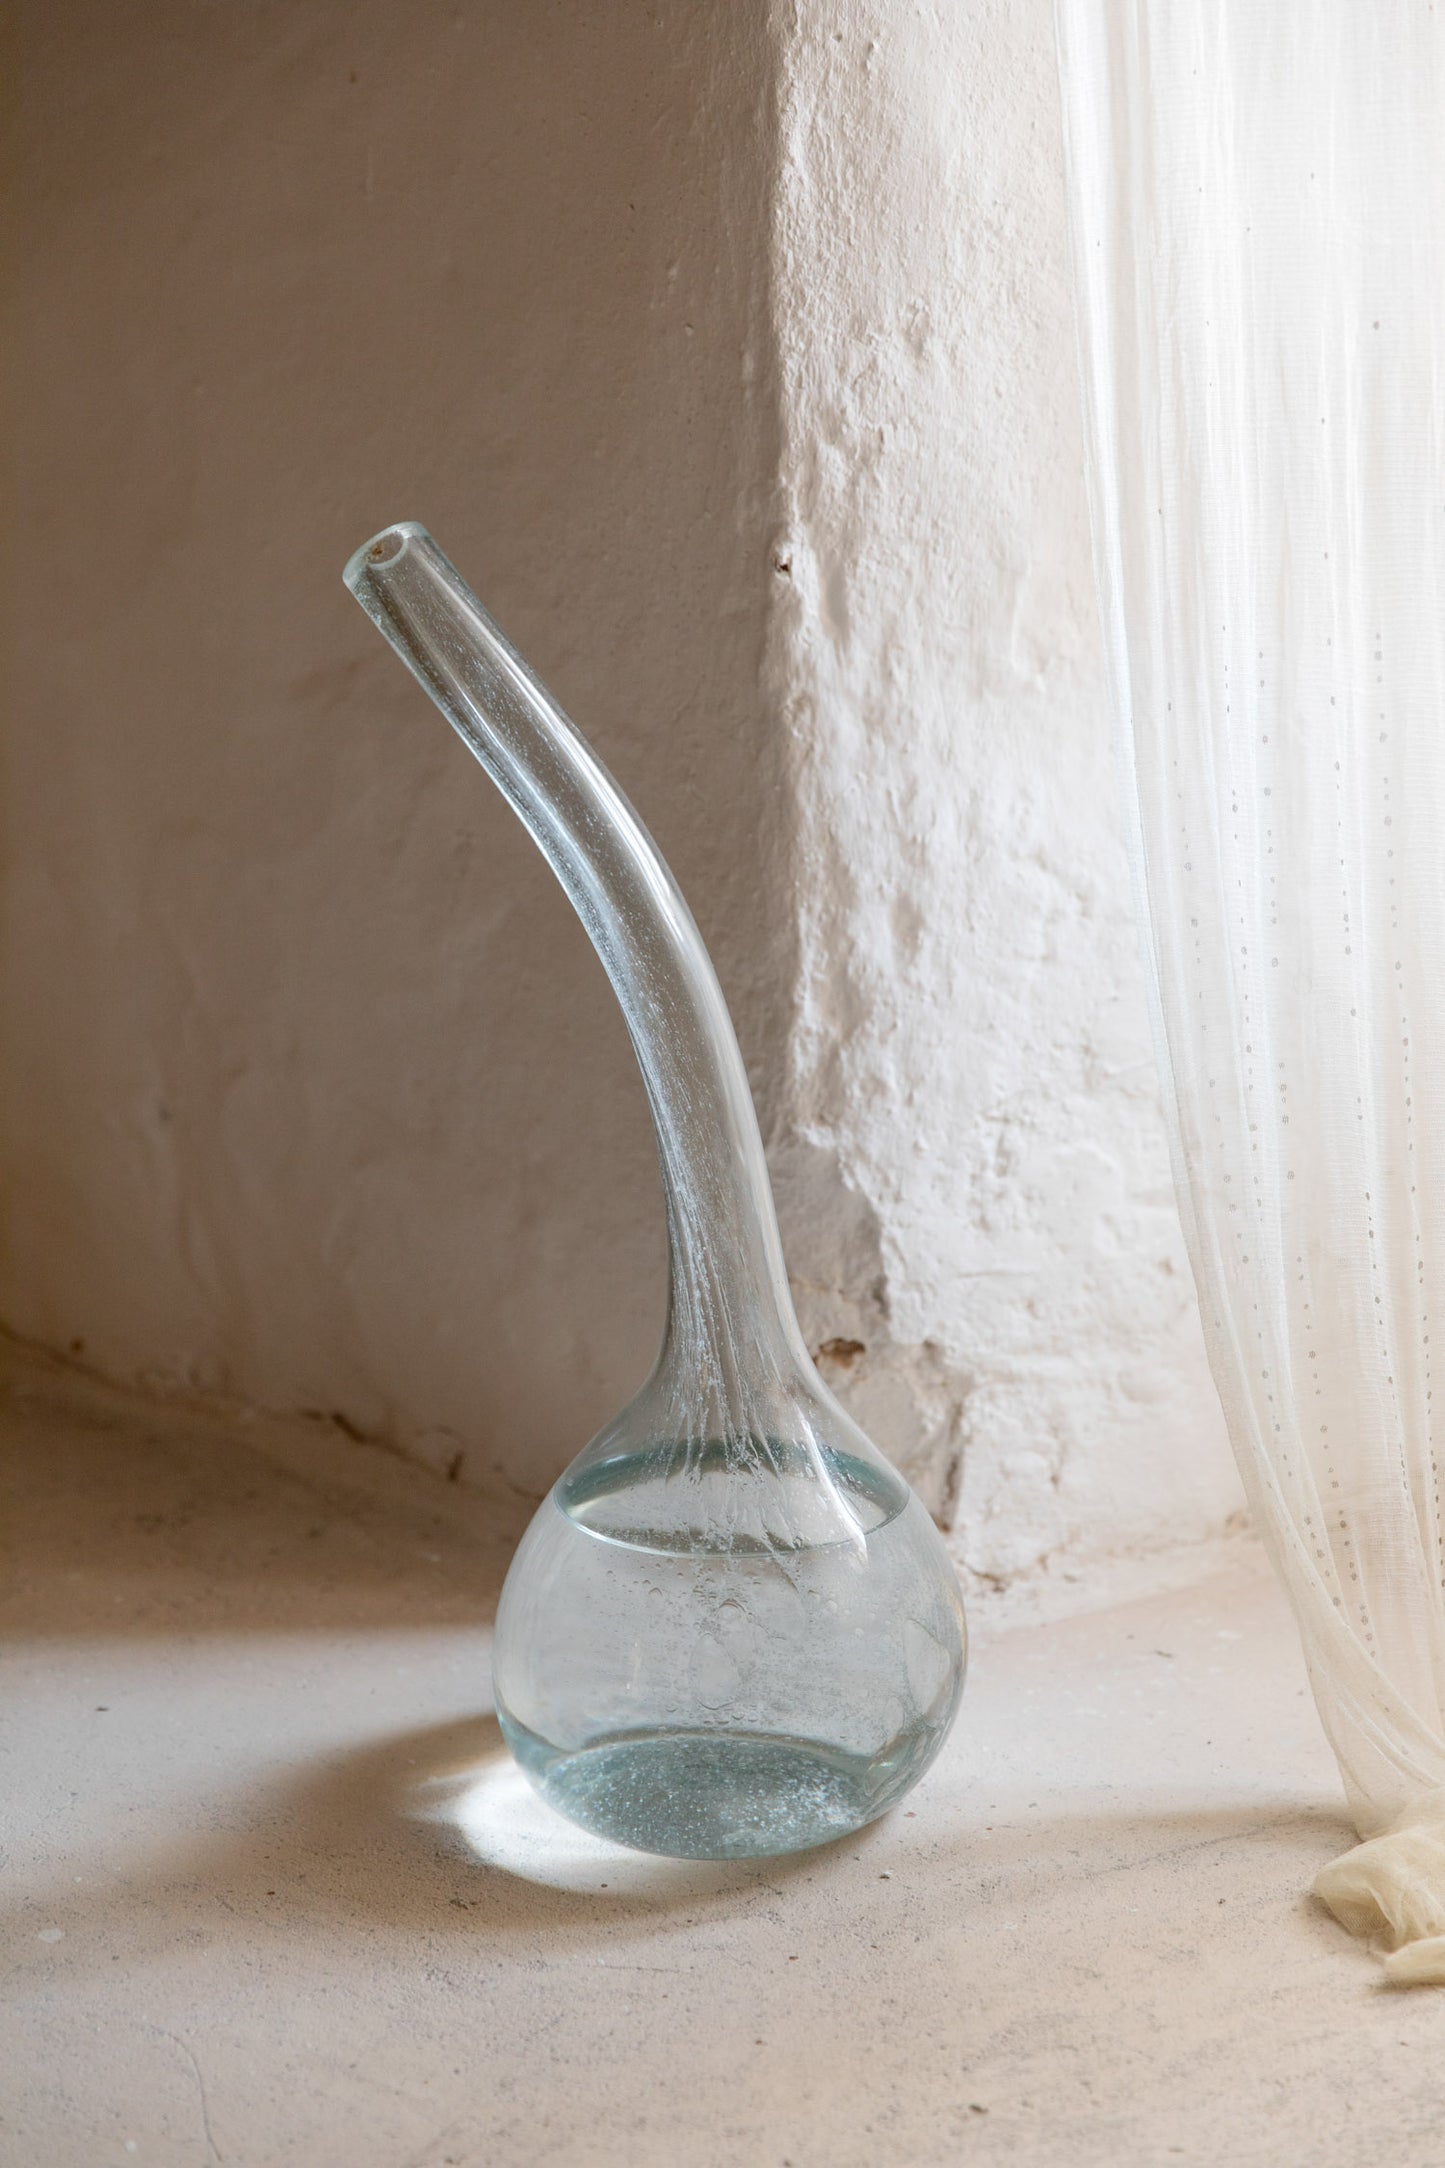 Calabaza, blown glass vase